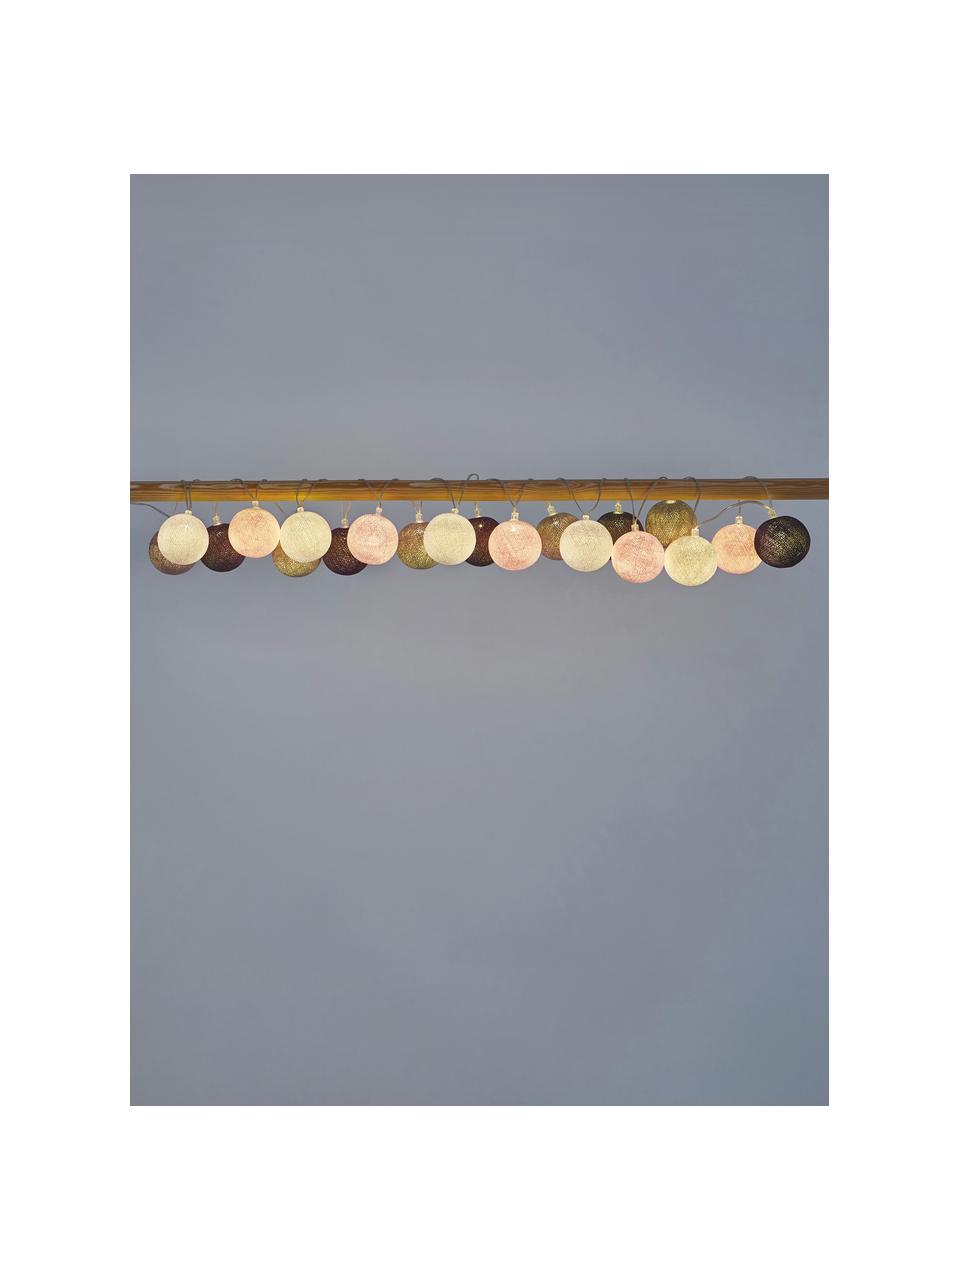 Guirlande lumineuse LED Colorain, 378 cm, Rose, tons gris, long. 378 cm